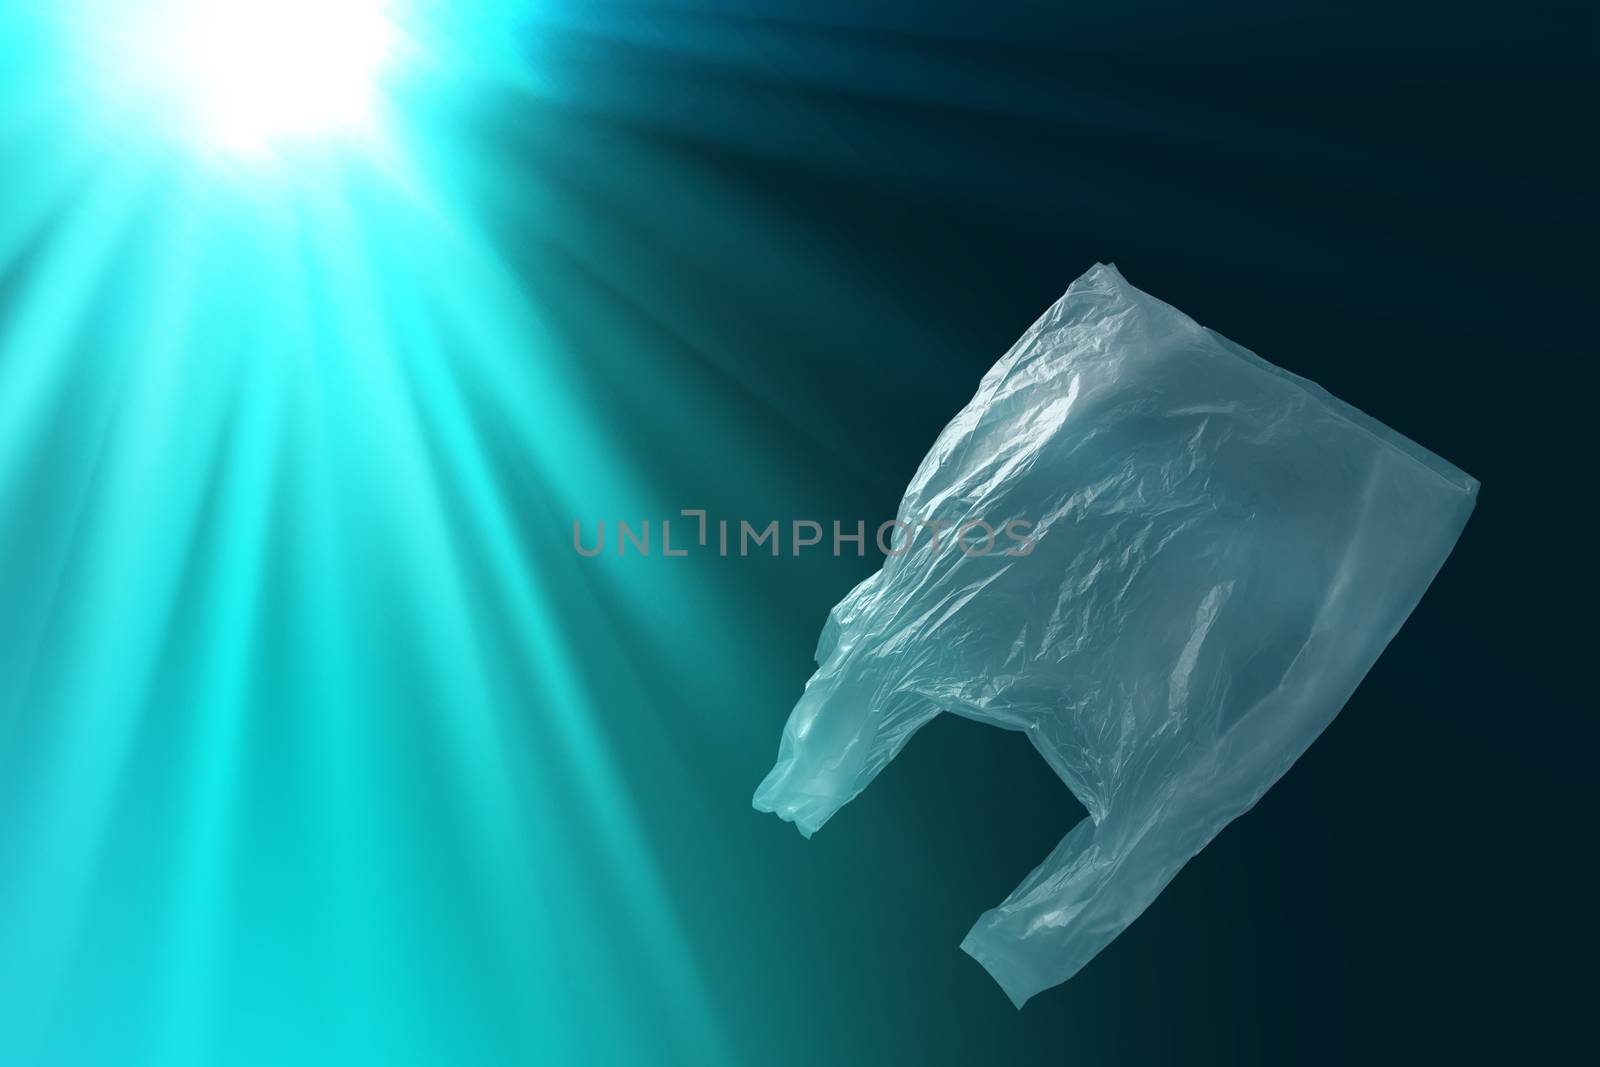 single-use plastic bag floating in sea or ocean by happycreator